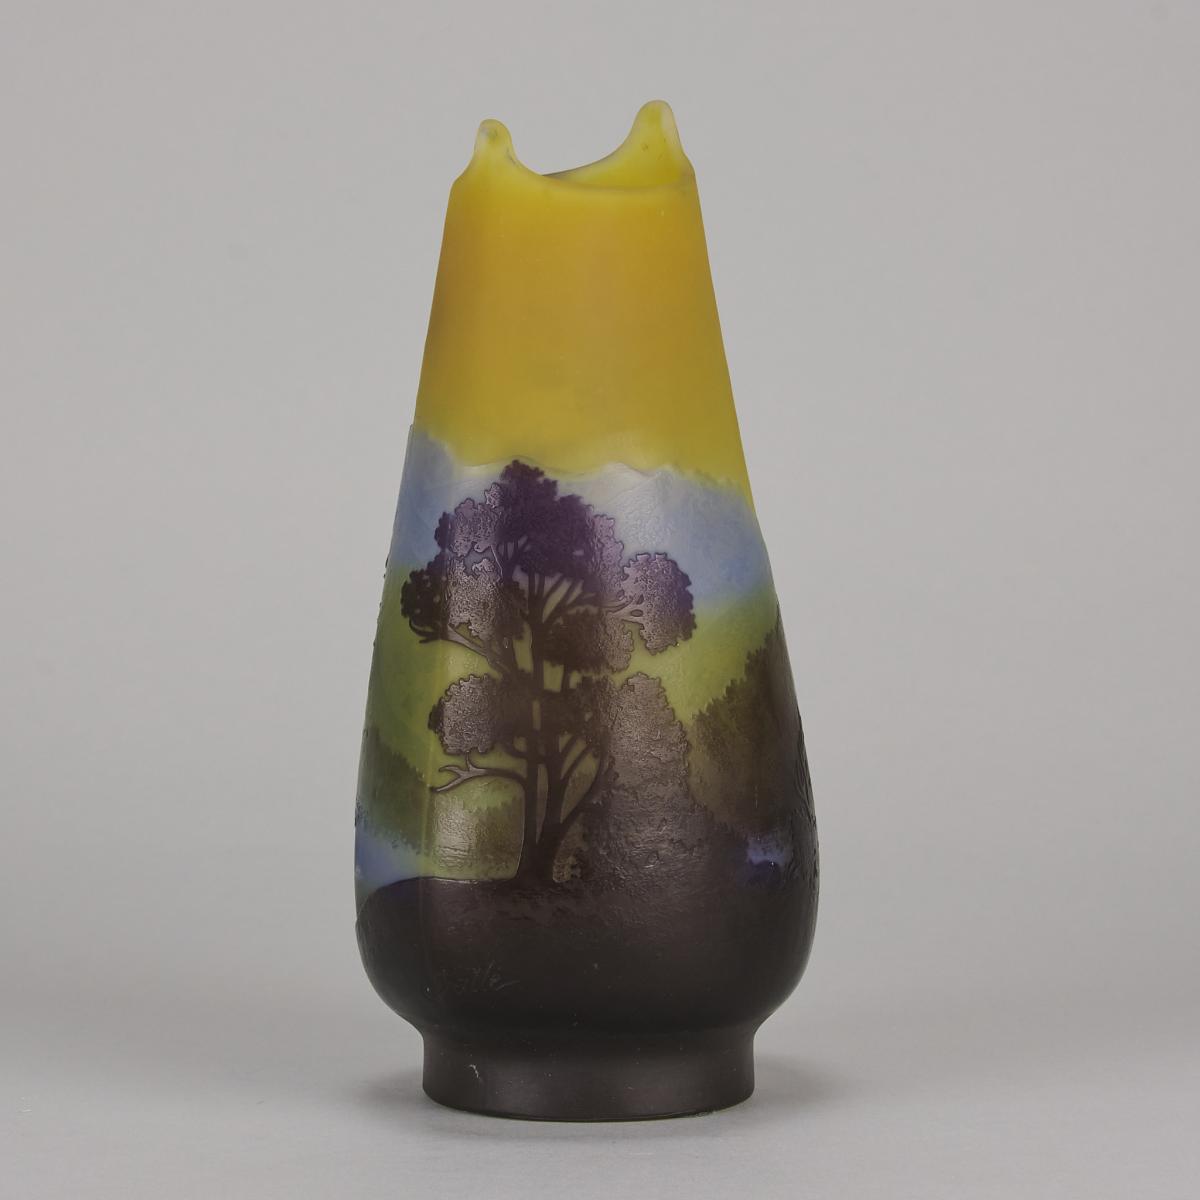 Early 20th Century Art Nouveau Glass Vase "Landscape Vase" by Emile Gallé